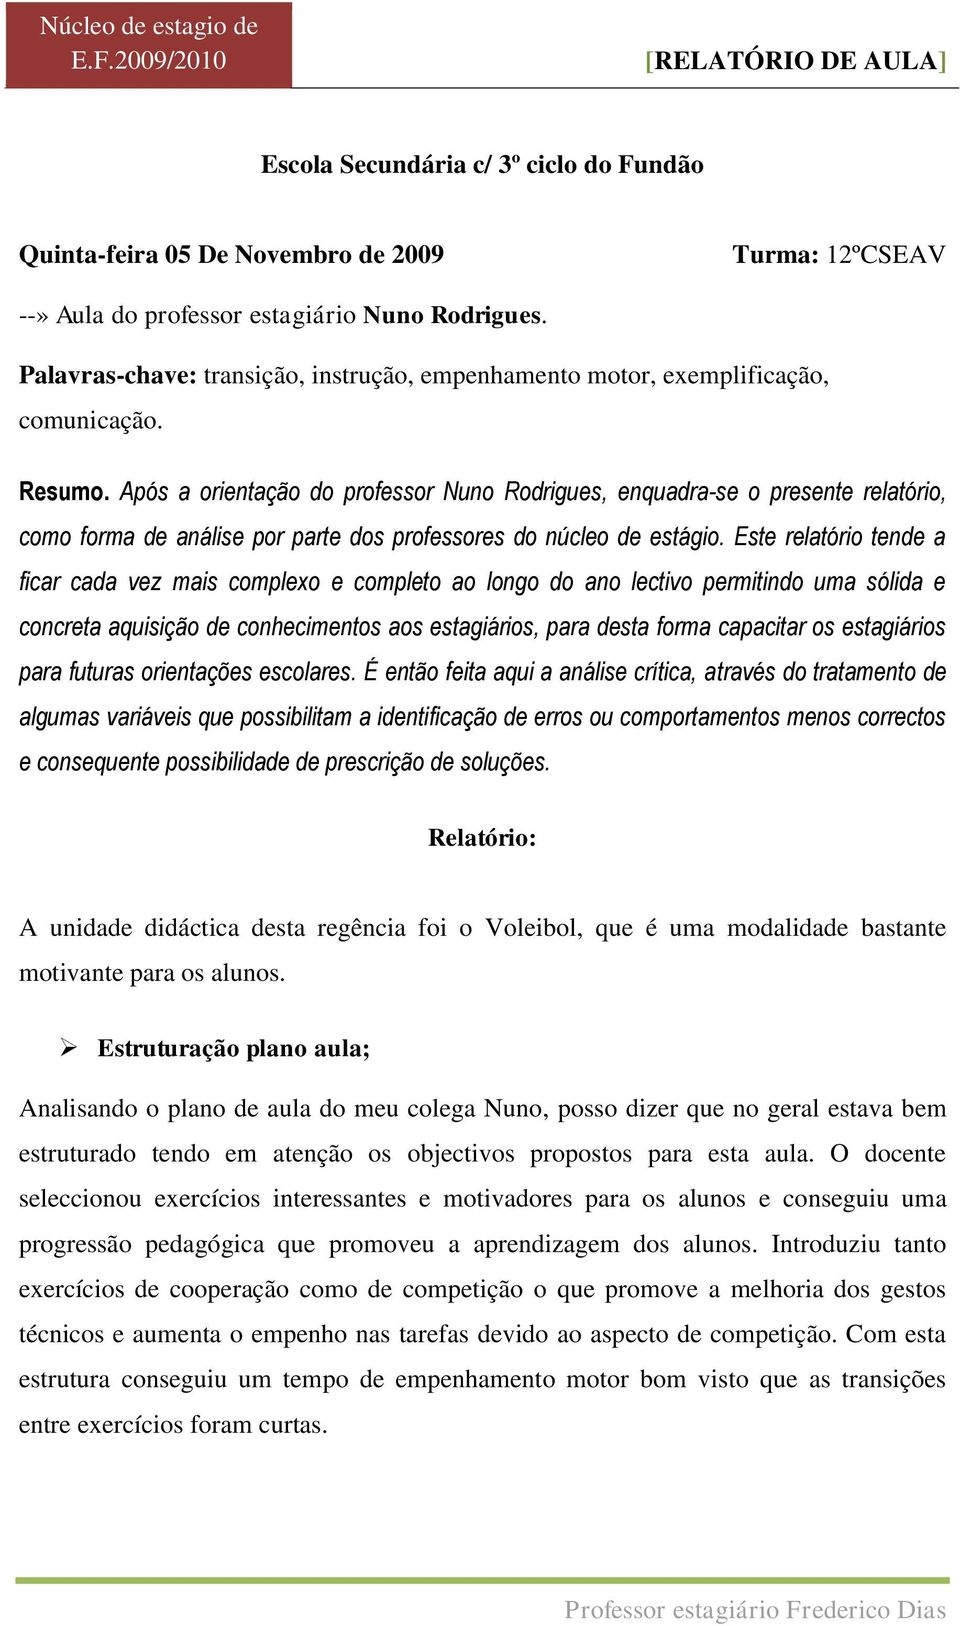 Após a orientação do professor Nuno Rodrigues, enquadra-se o presente relatório, como forma de análise por parte dos professores do núcleo de estágio.